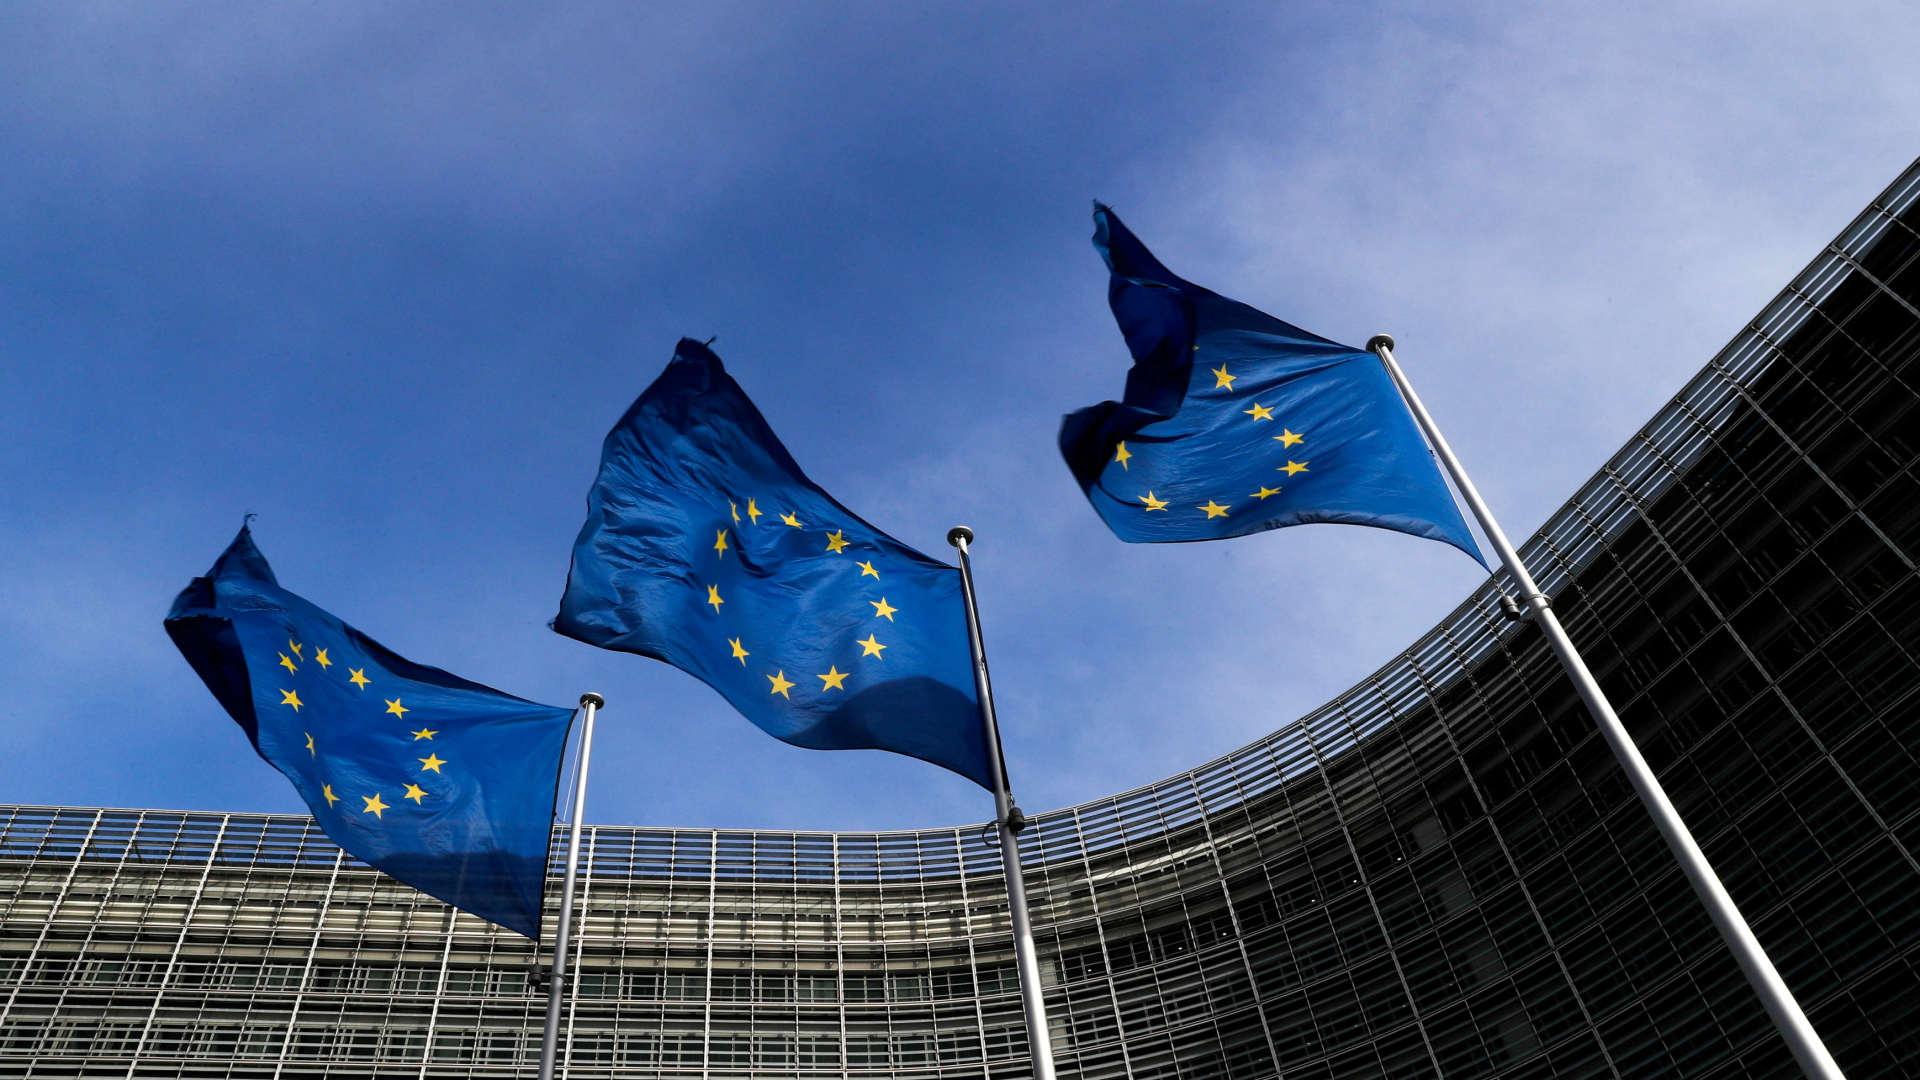 Flaggen der Europäischen Union vor dem Sitz der EU-Kommission in Brüssel